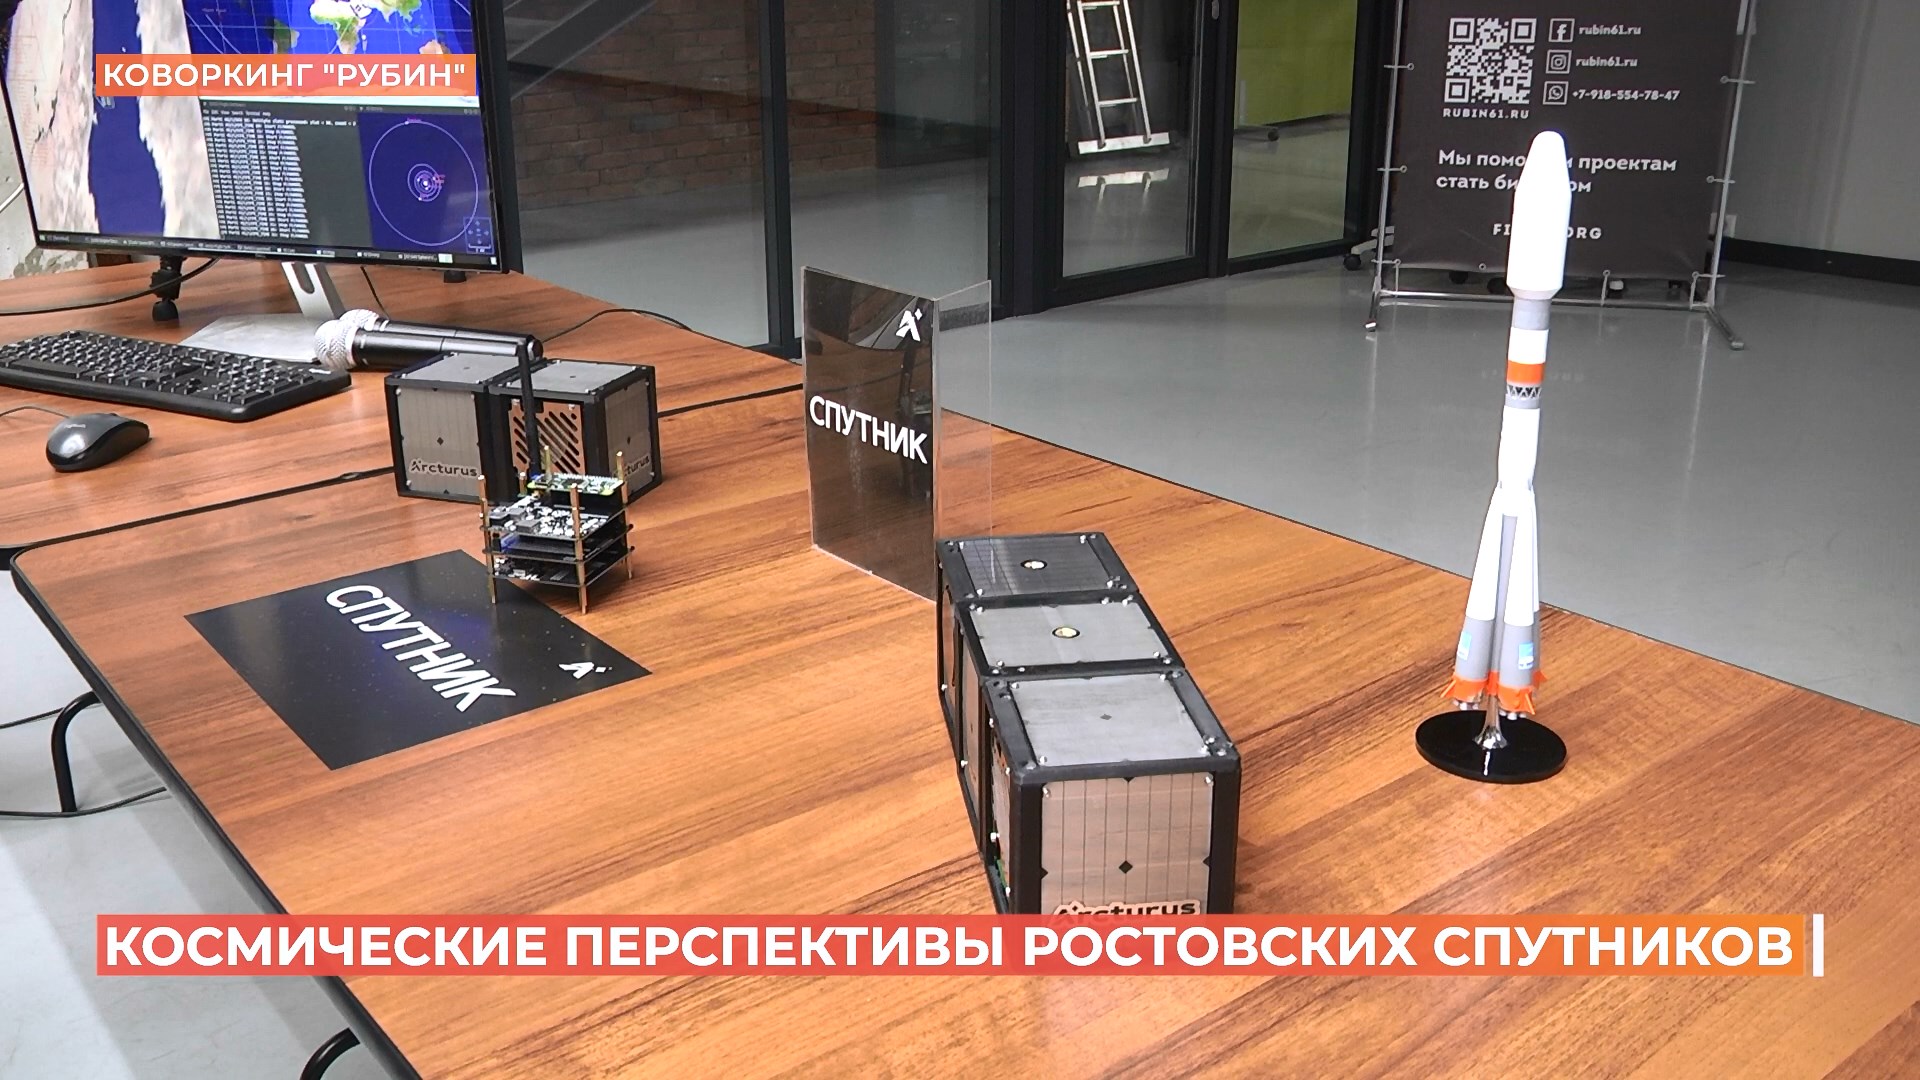 Макет наземной станции для спутниковой связи презентовали ростовские разработчики